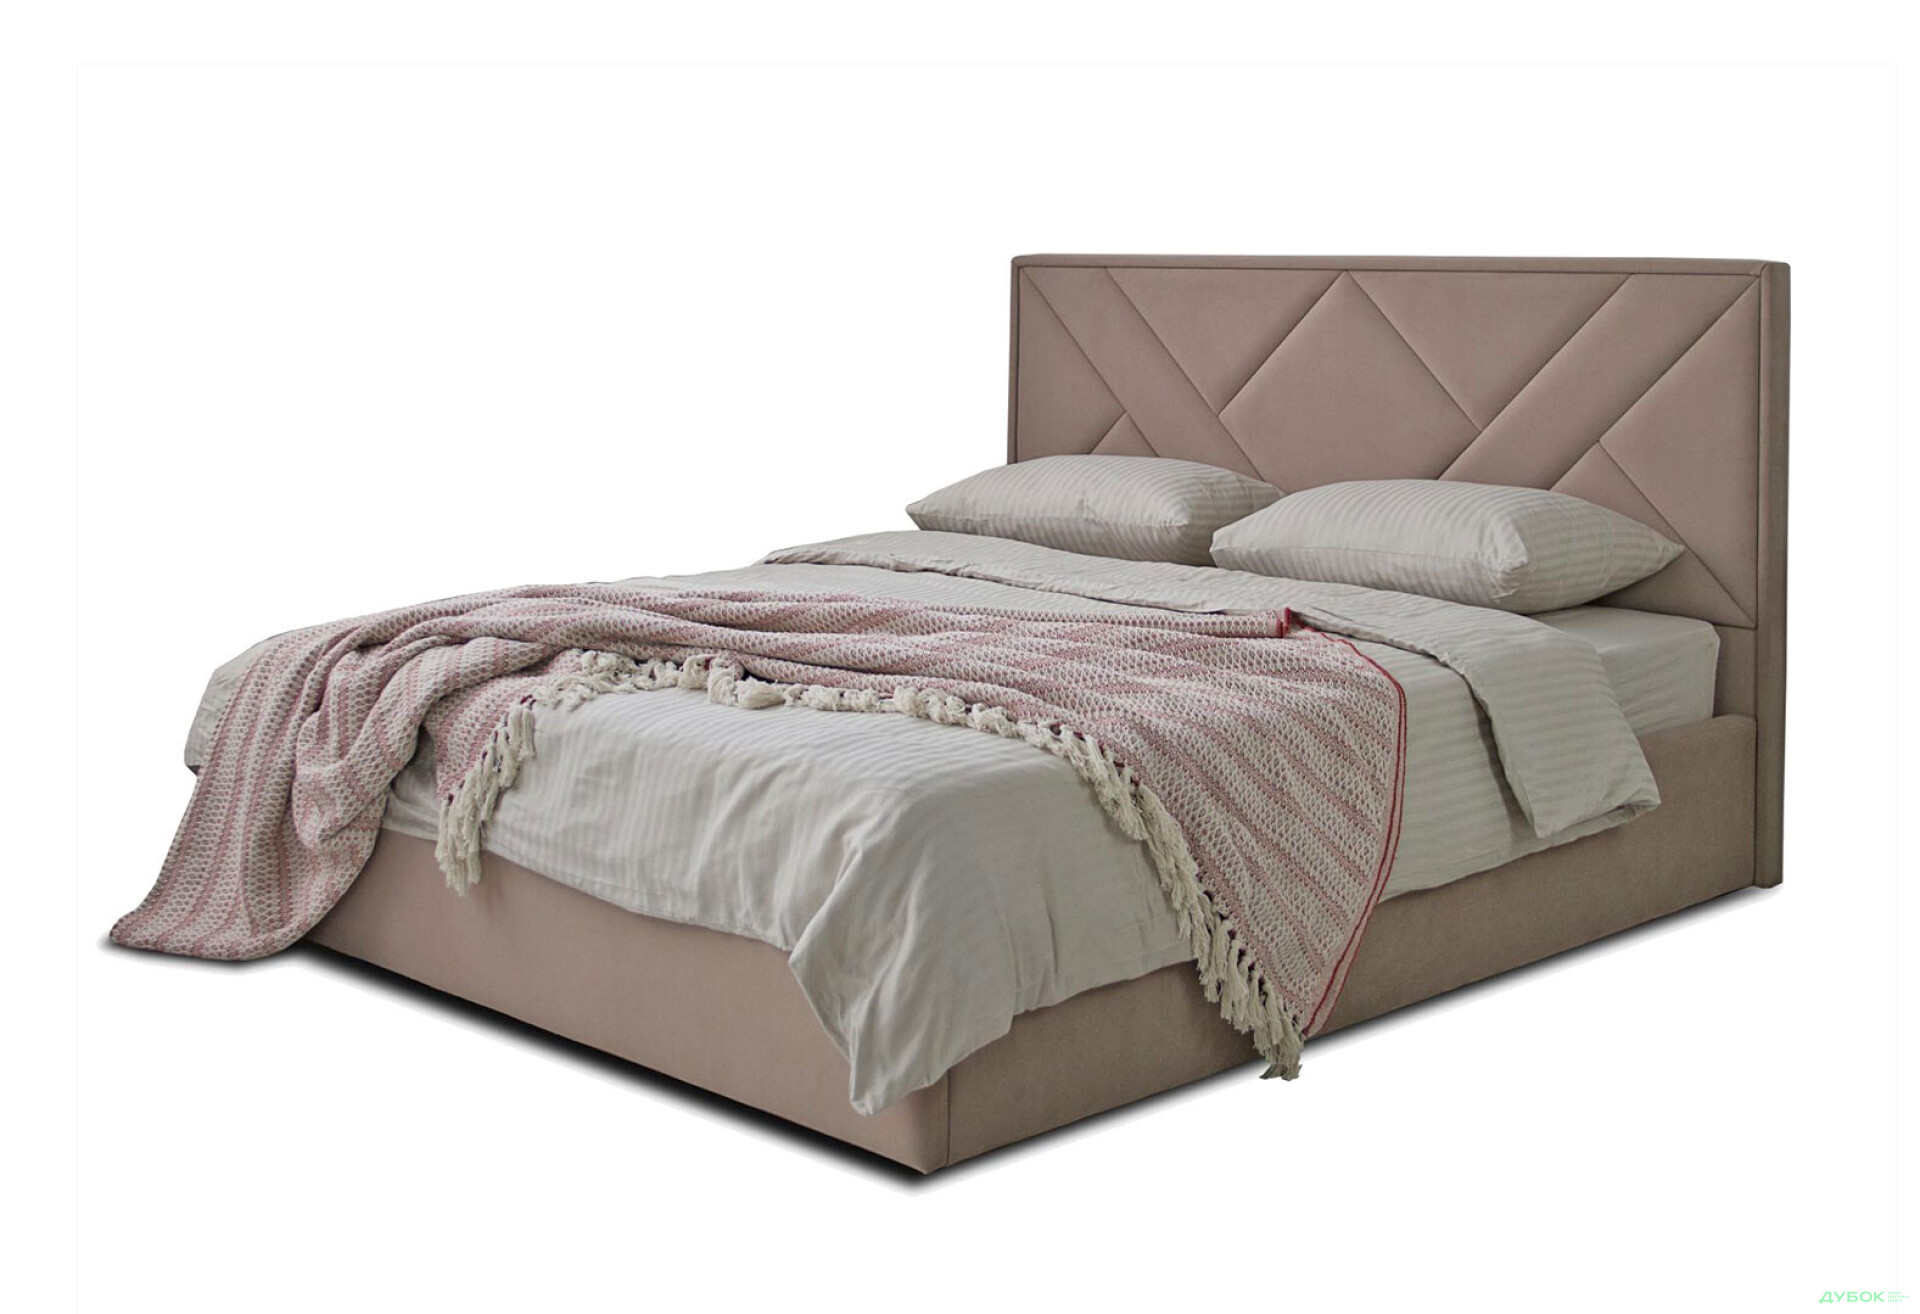 Зображення 1 - Ліжко Eurosof Олівія 160х200 см з нішею та металопідйомником, бежевий